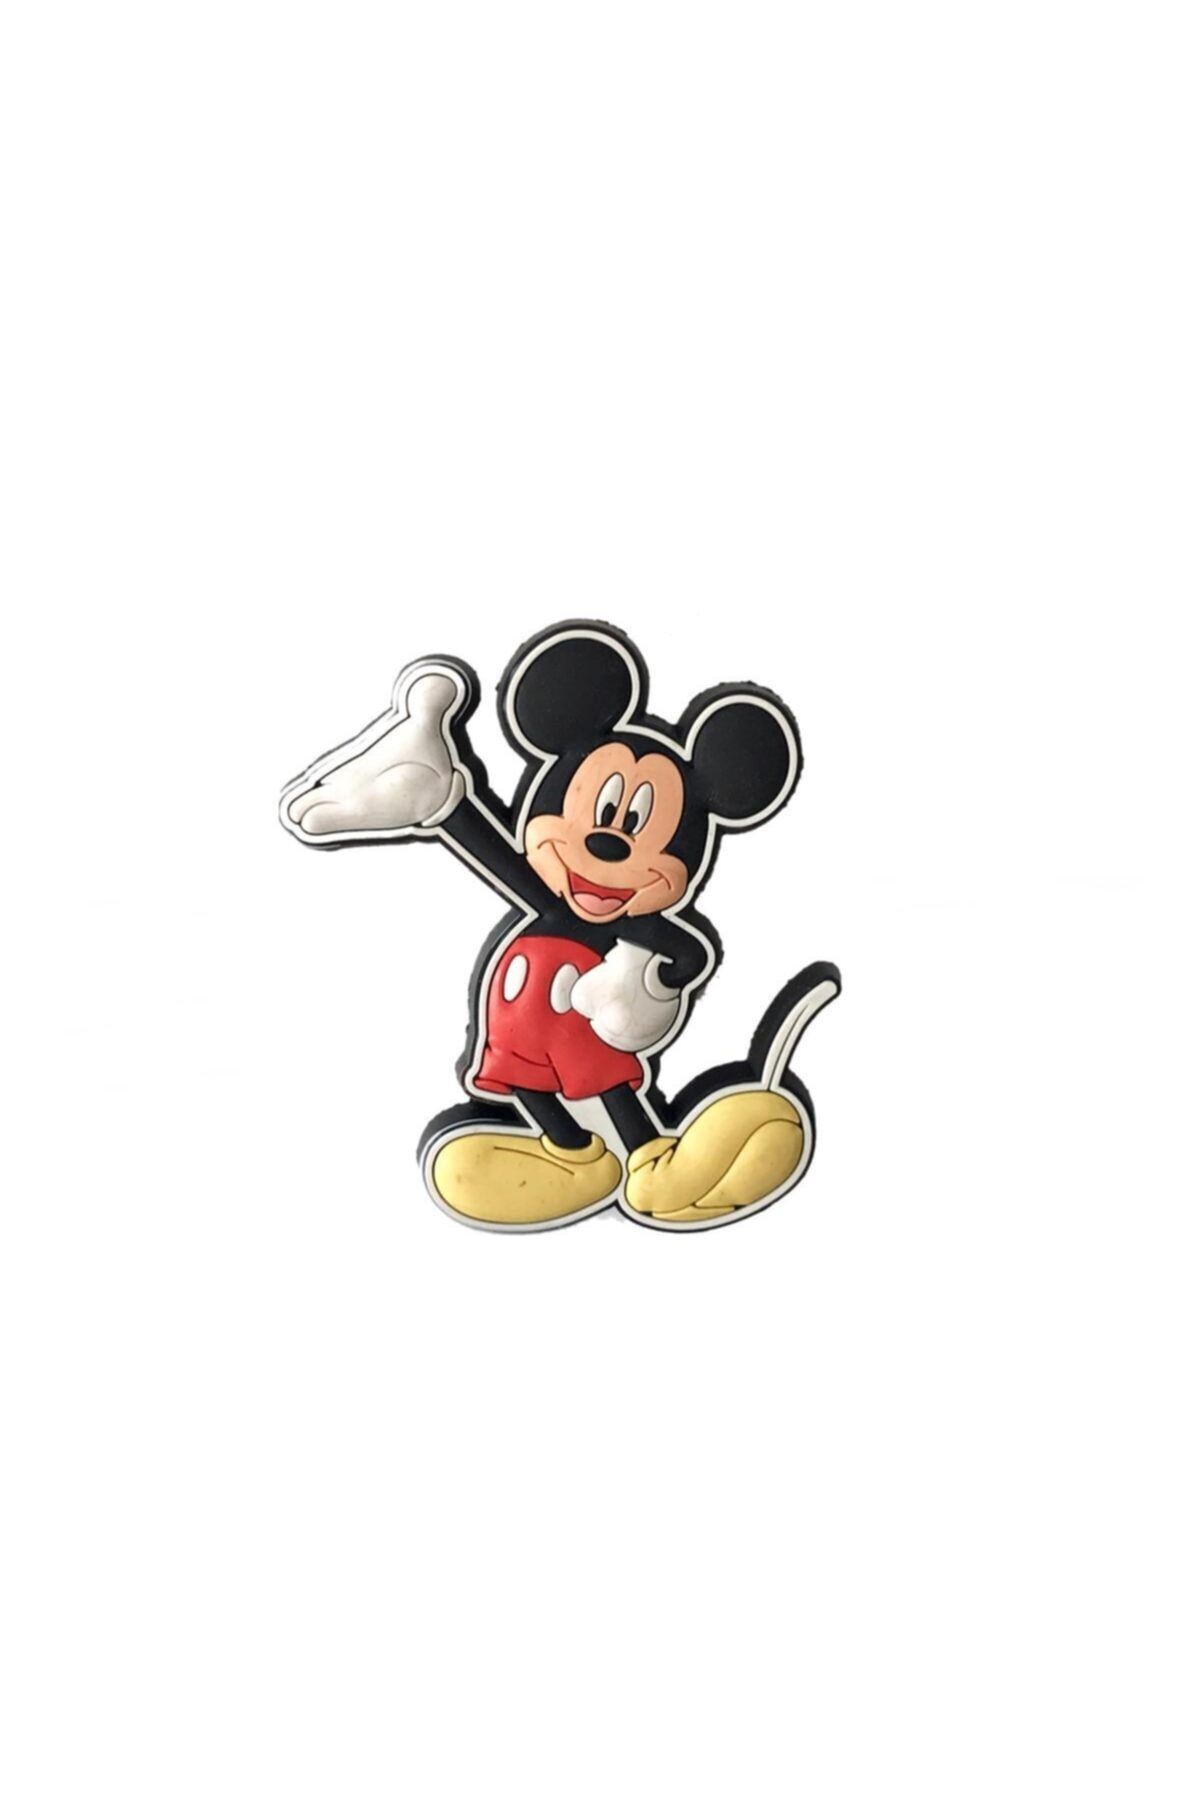 EYM Çocuk Odası Mobilya Kulp Dolap Düğme Mickey Mouse No:5